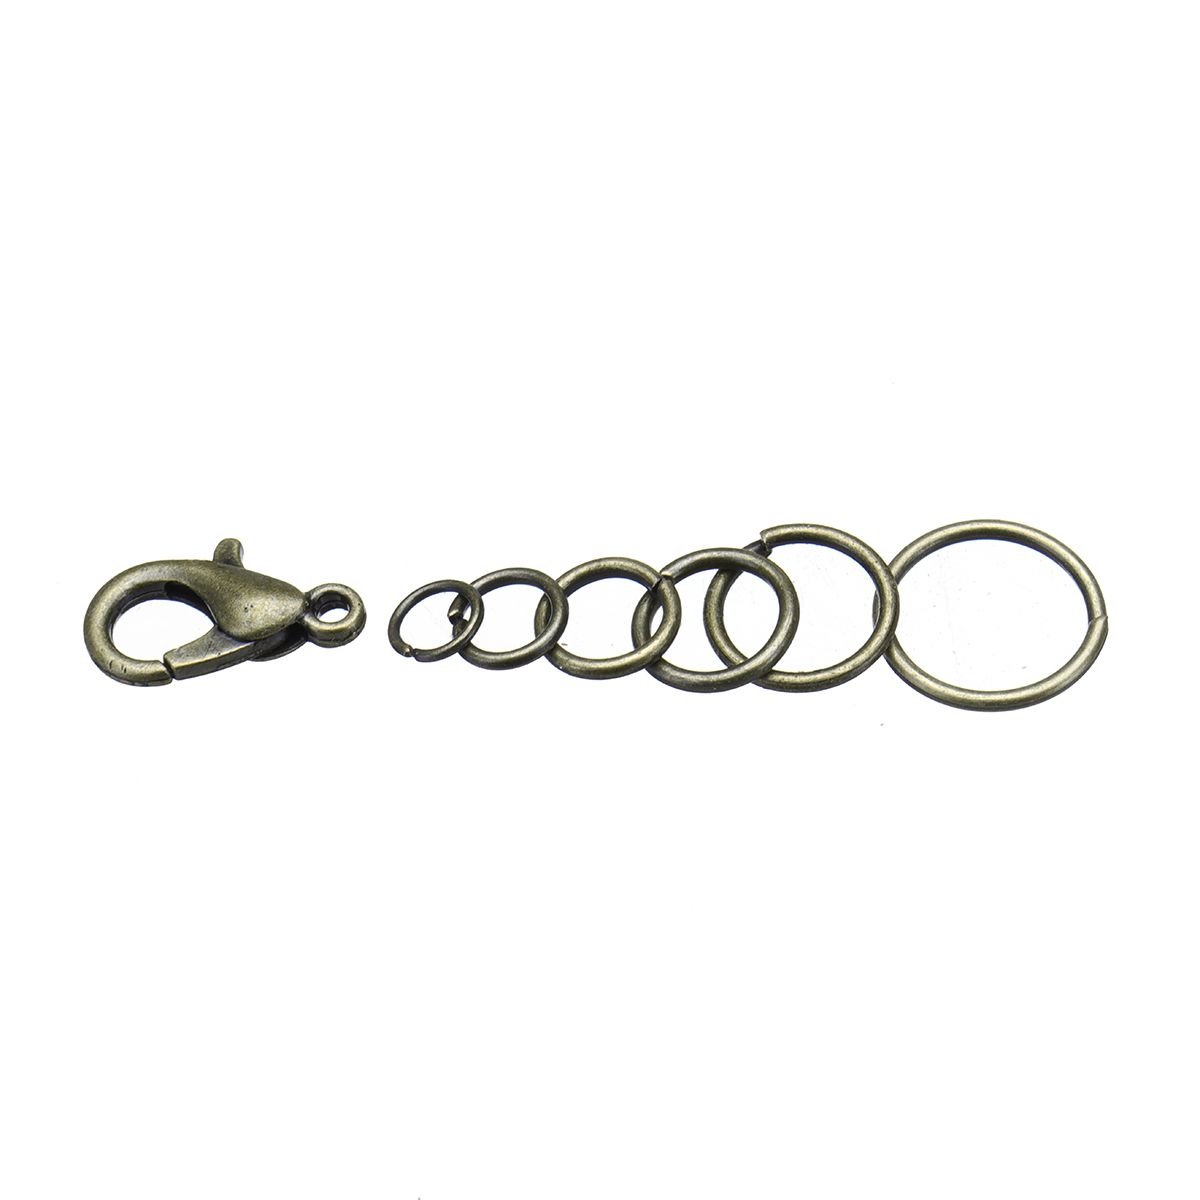 DIY-Jewelry-Making-Findings-Kit-Metal-Jump-Rings-Lobster-Clasp-Pliers-Tool-Set-1420893